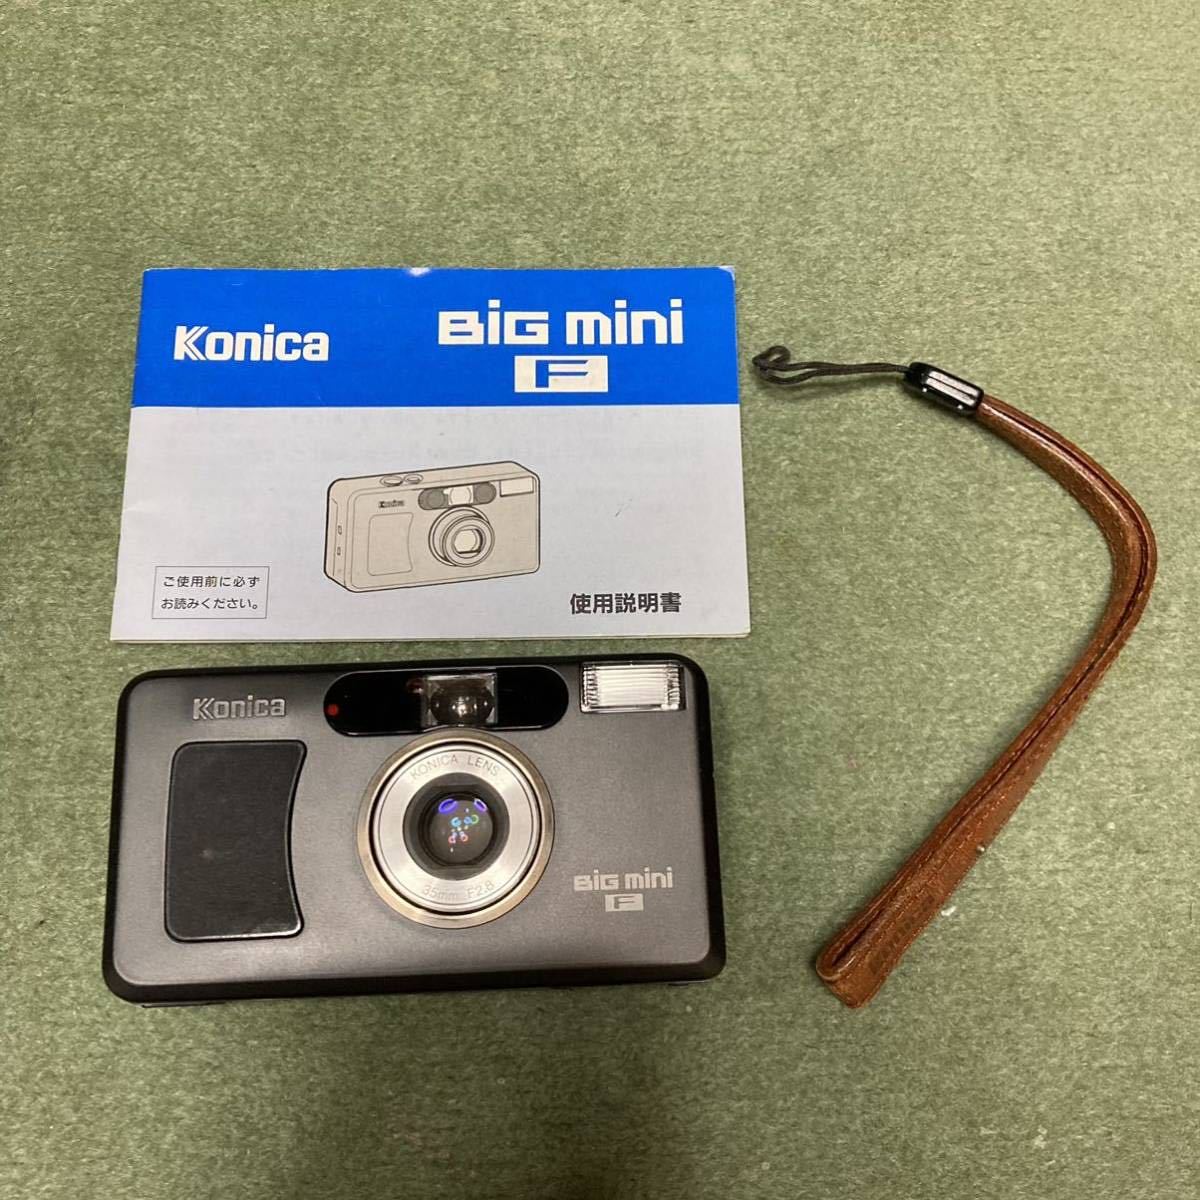 Konica コニカ BiG mini F ビッグミニ 35mm F2.8 コンパクトフィルムカメラ ストラップ 説明書付き 